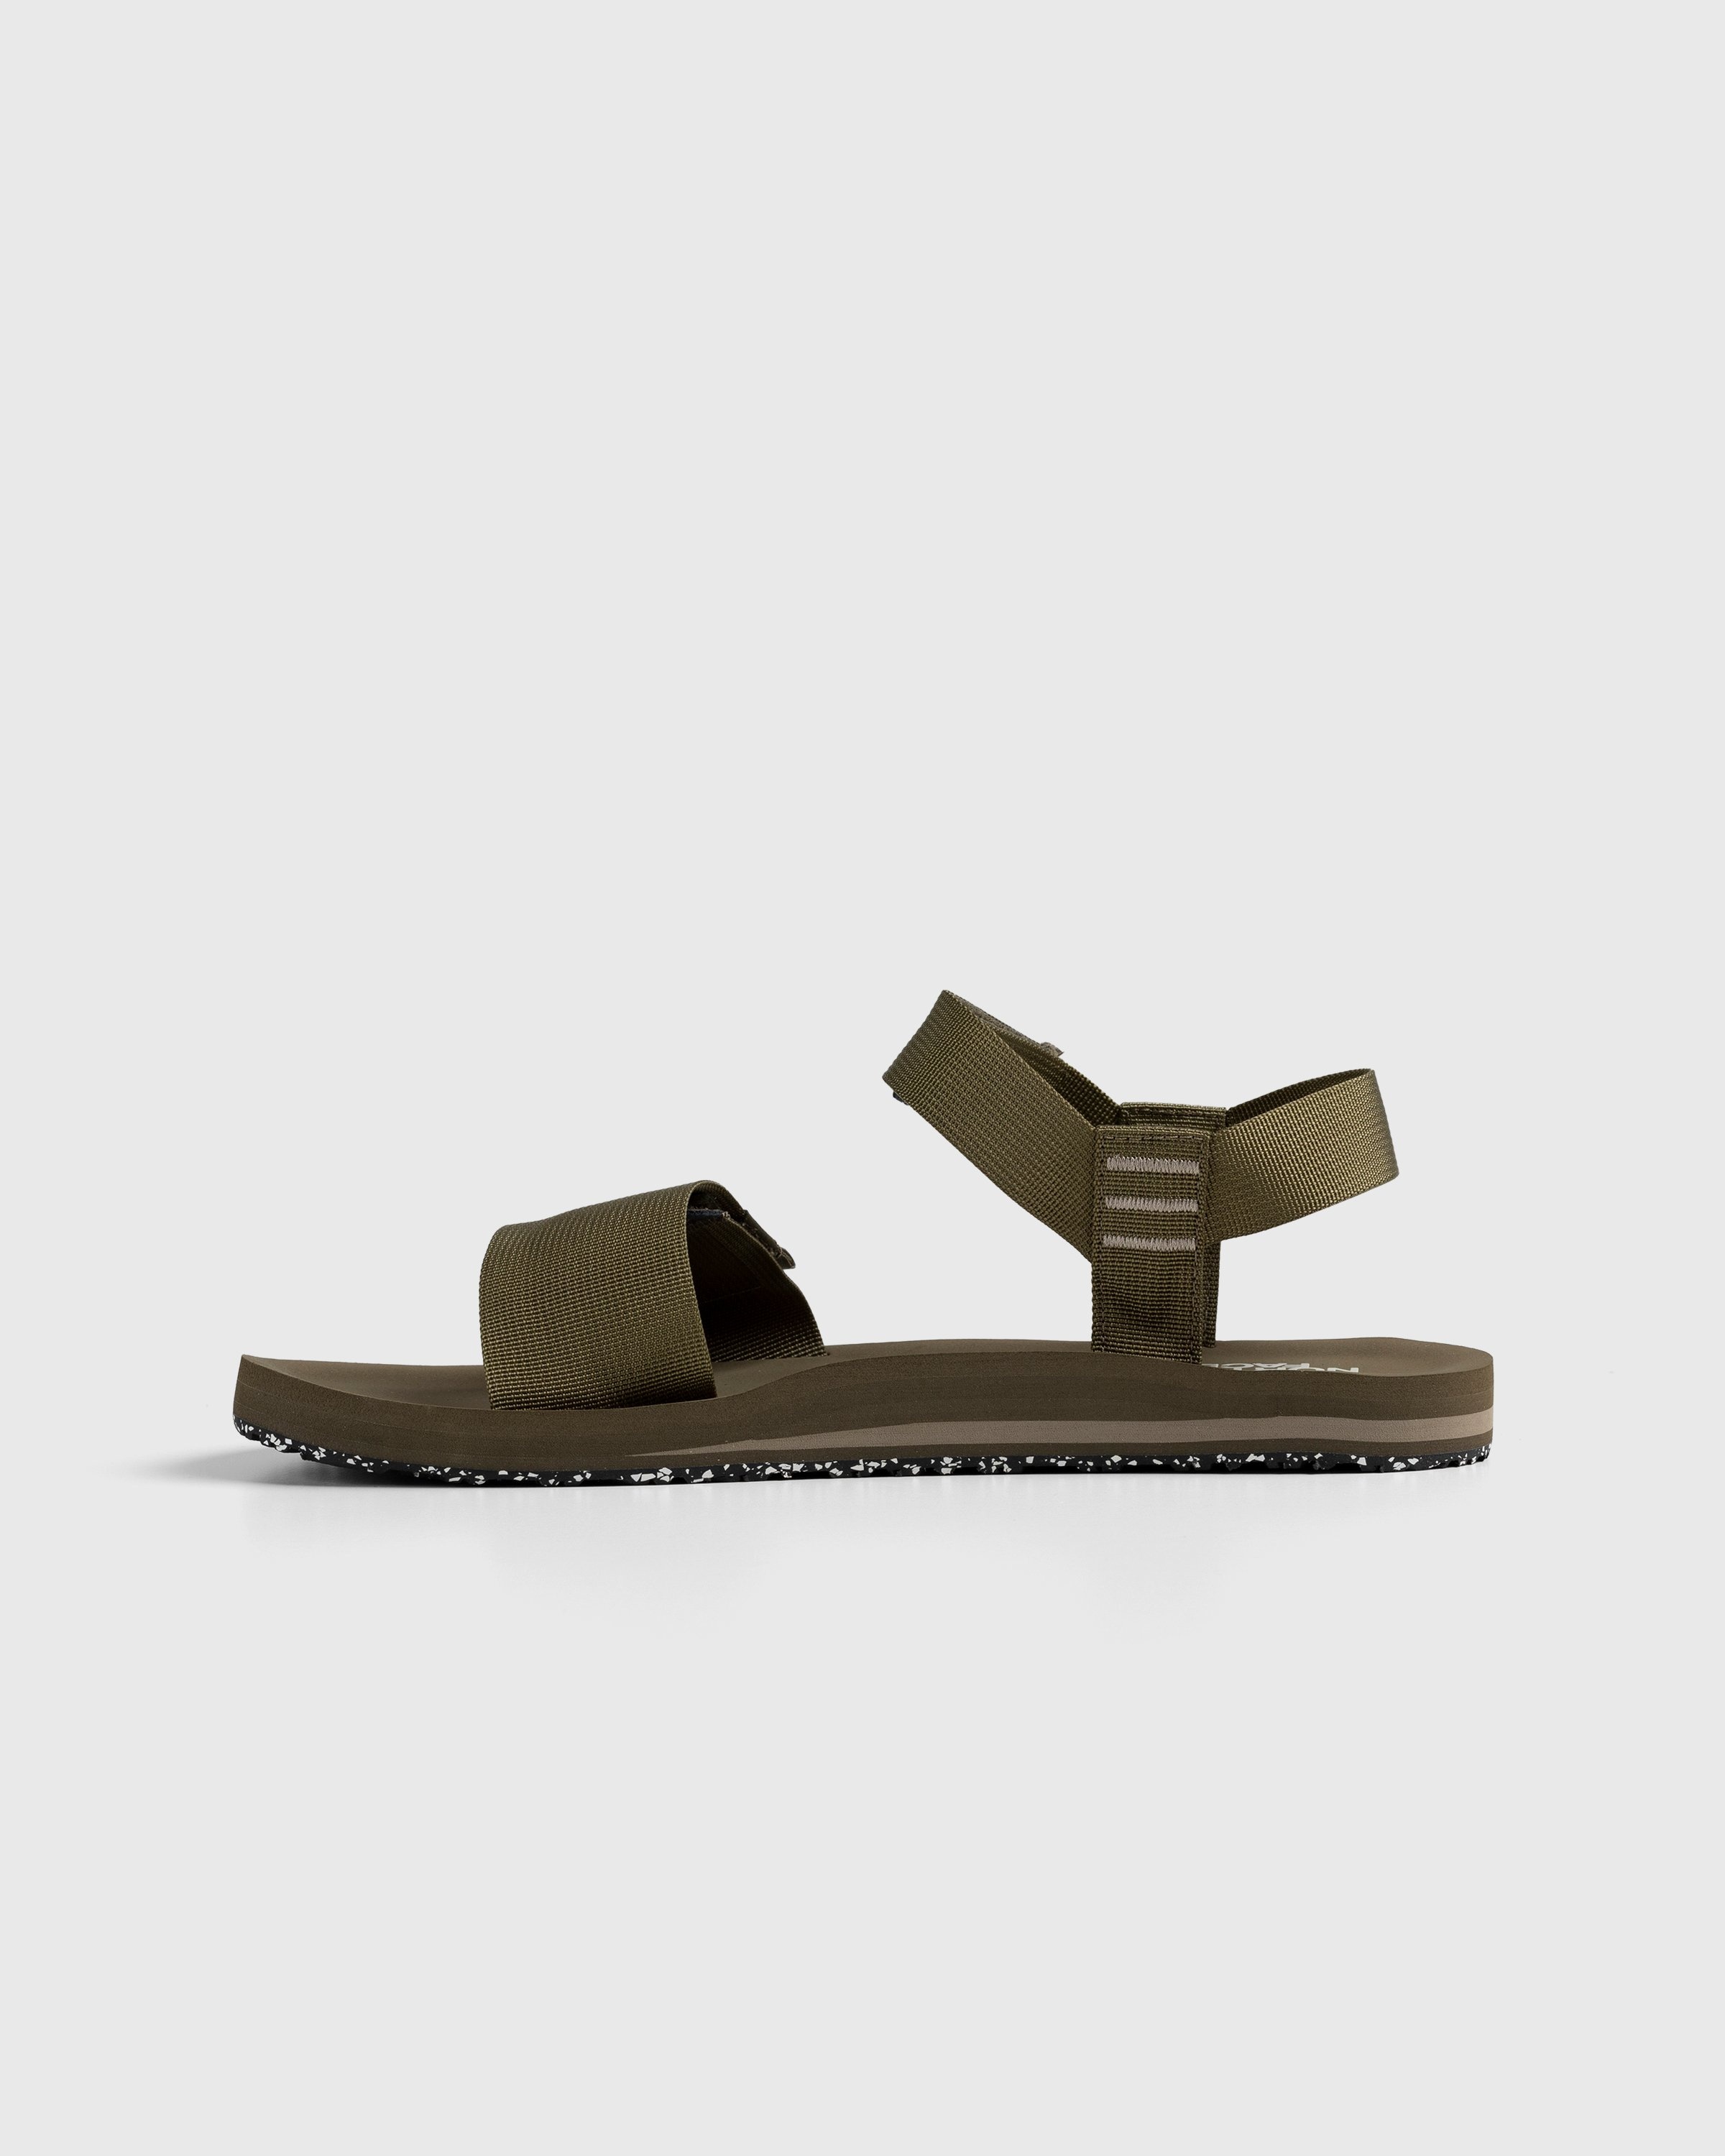 The North Face – Skeena Sport Sandal Militaryolive/Mineralgrey - Sandals & Slides - Green - Image 2